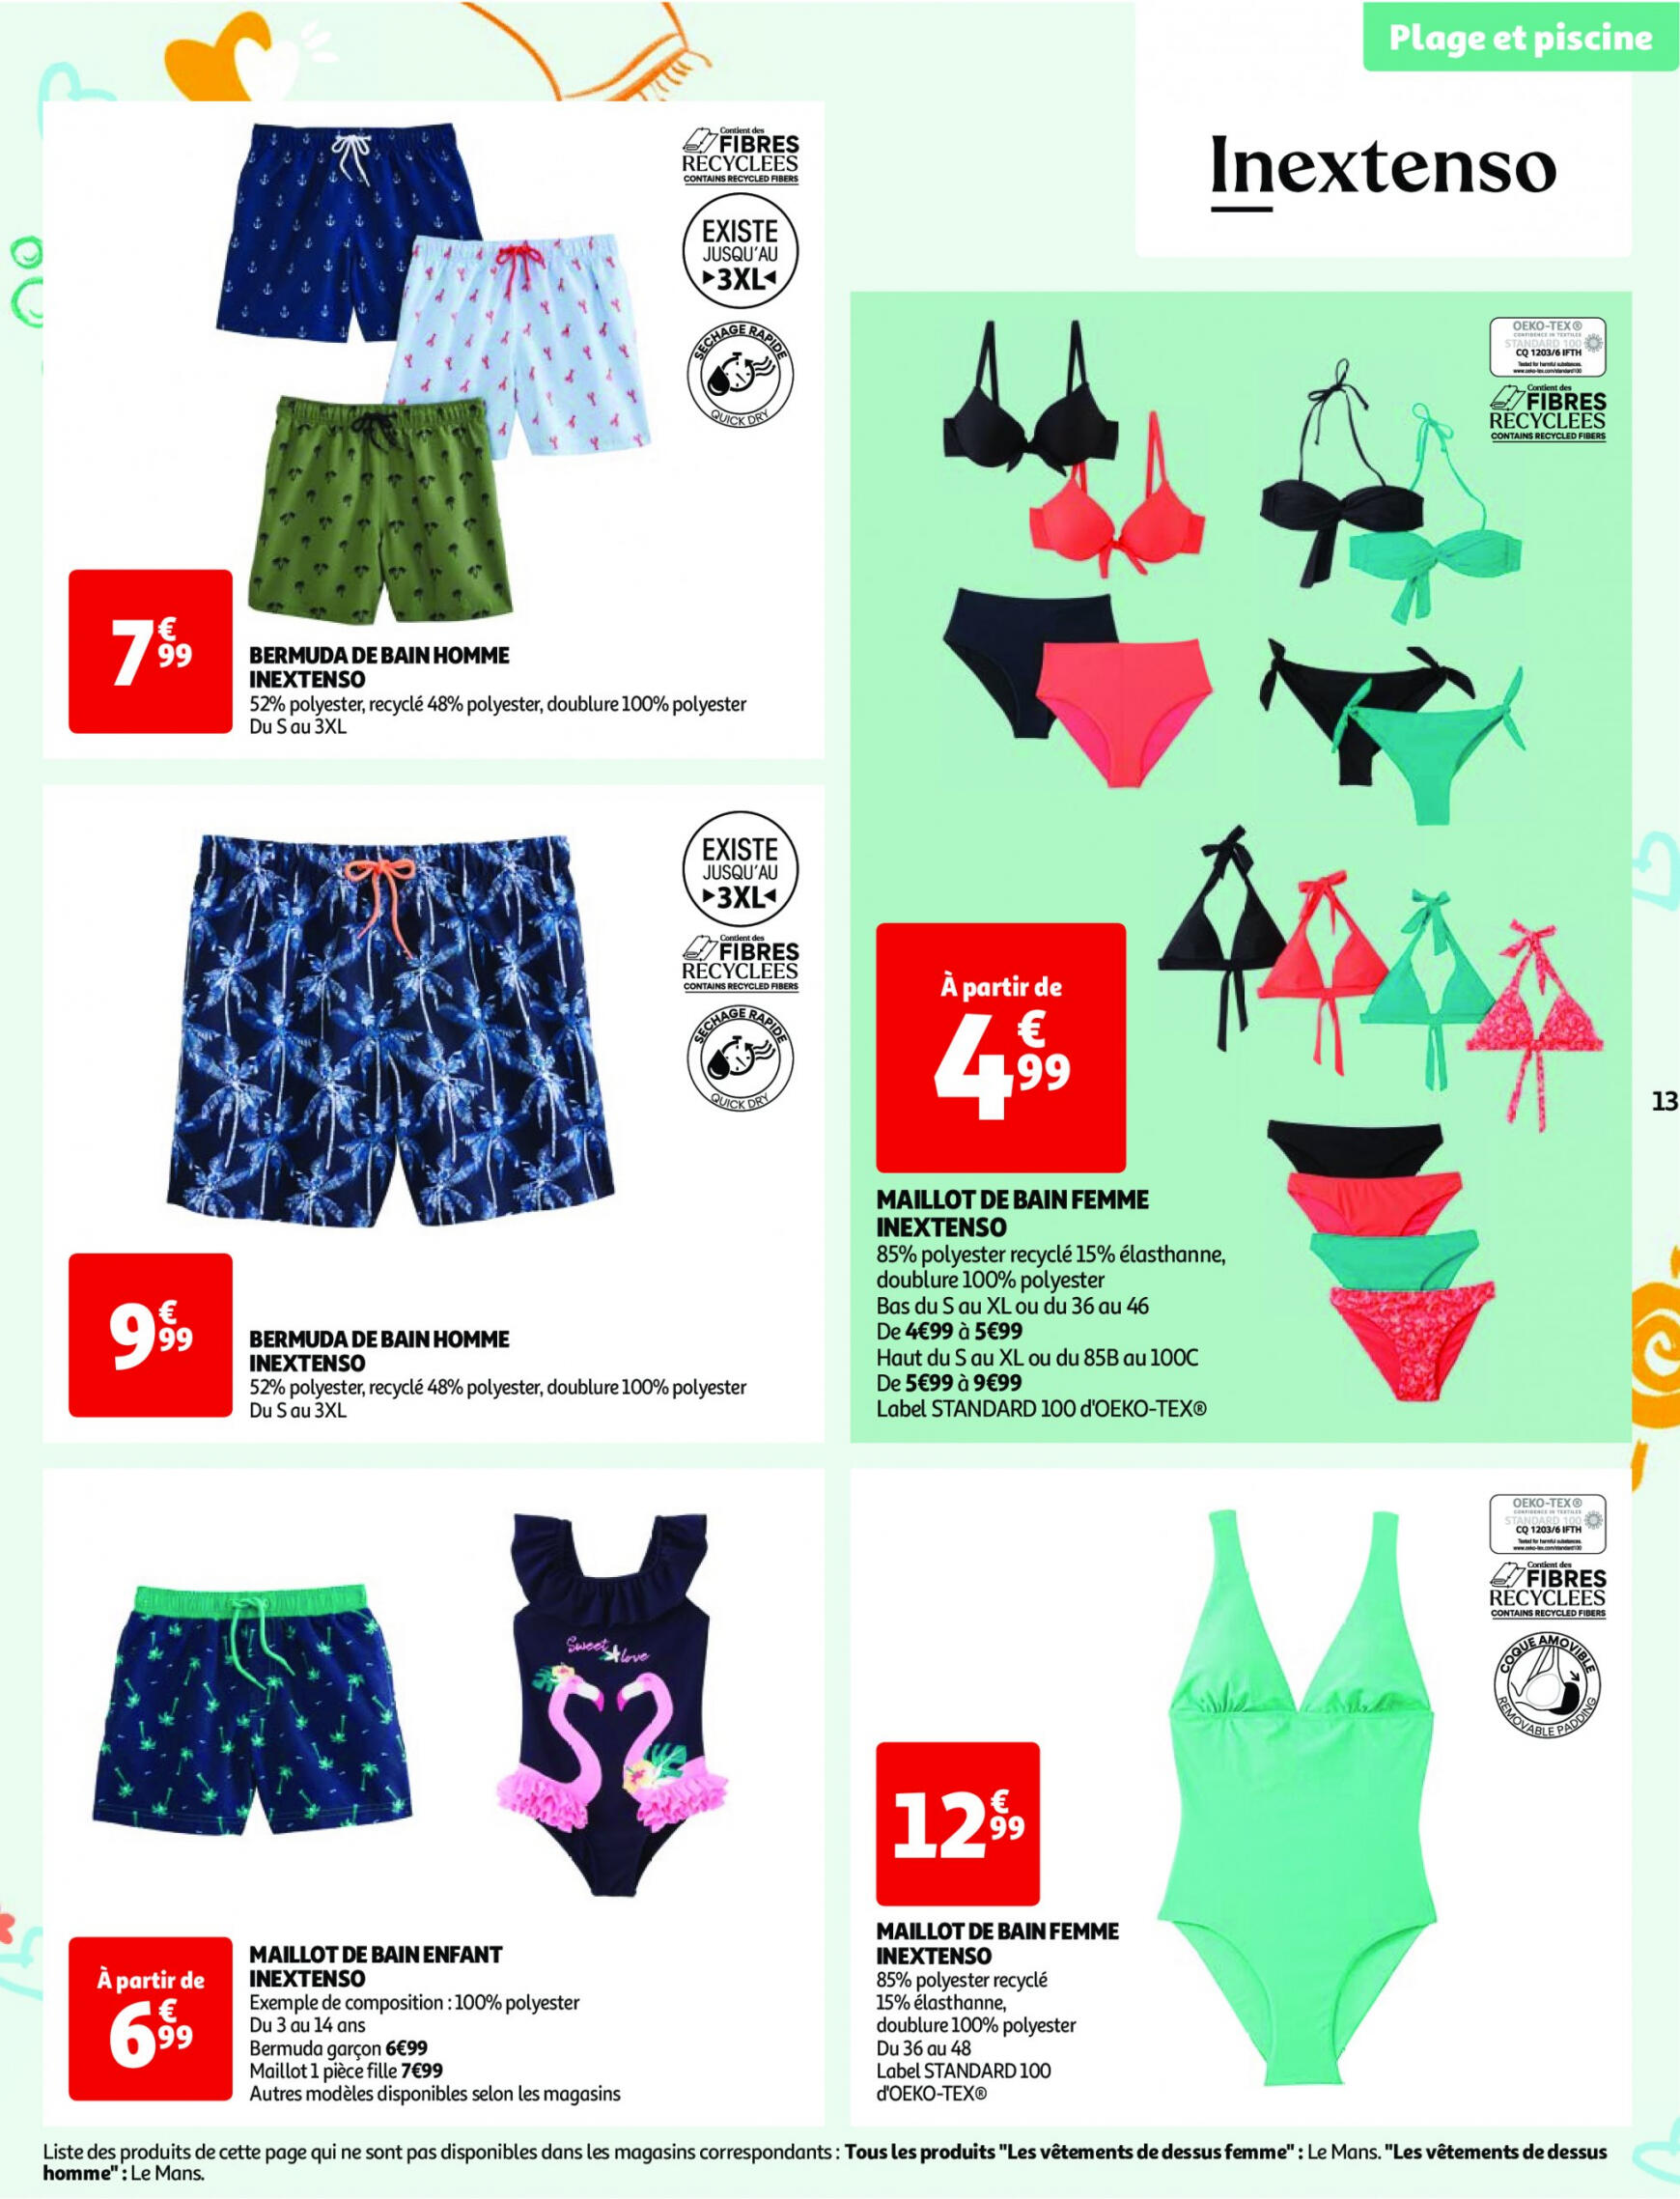 auchan - Auchan - Nos exclusivités Summer pour s'amuser tout l'été folder huidig 14.05. - 15.06. - page: 13